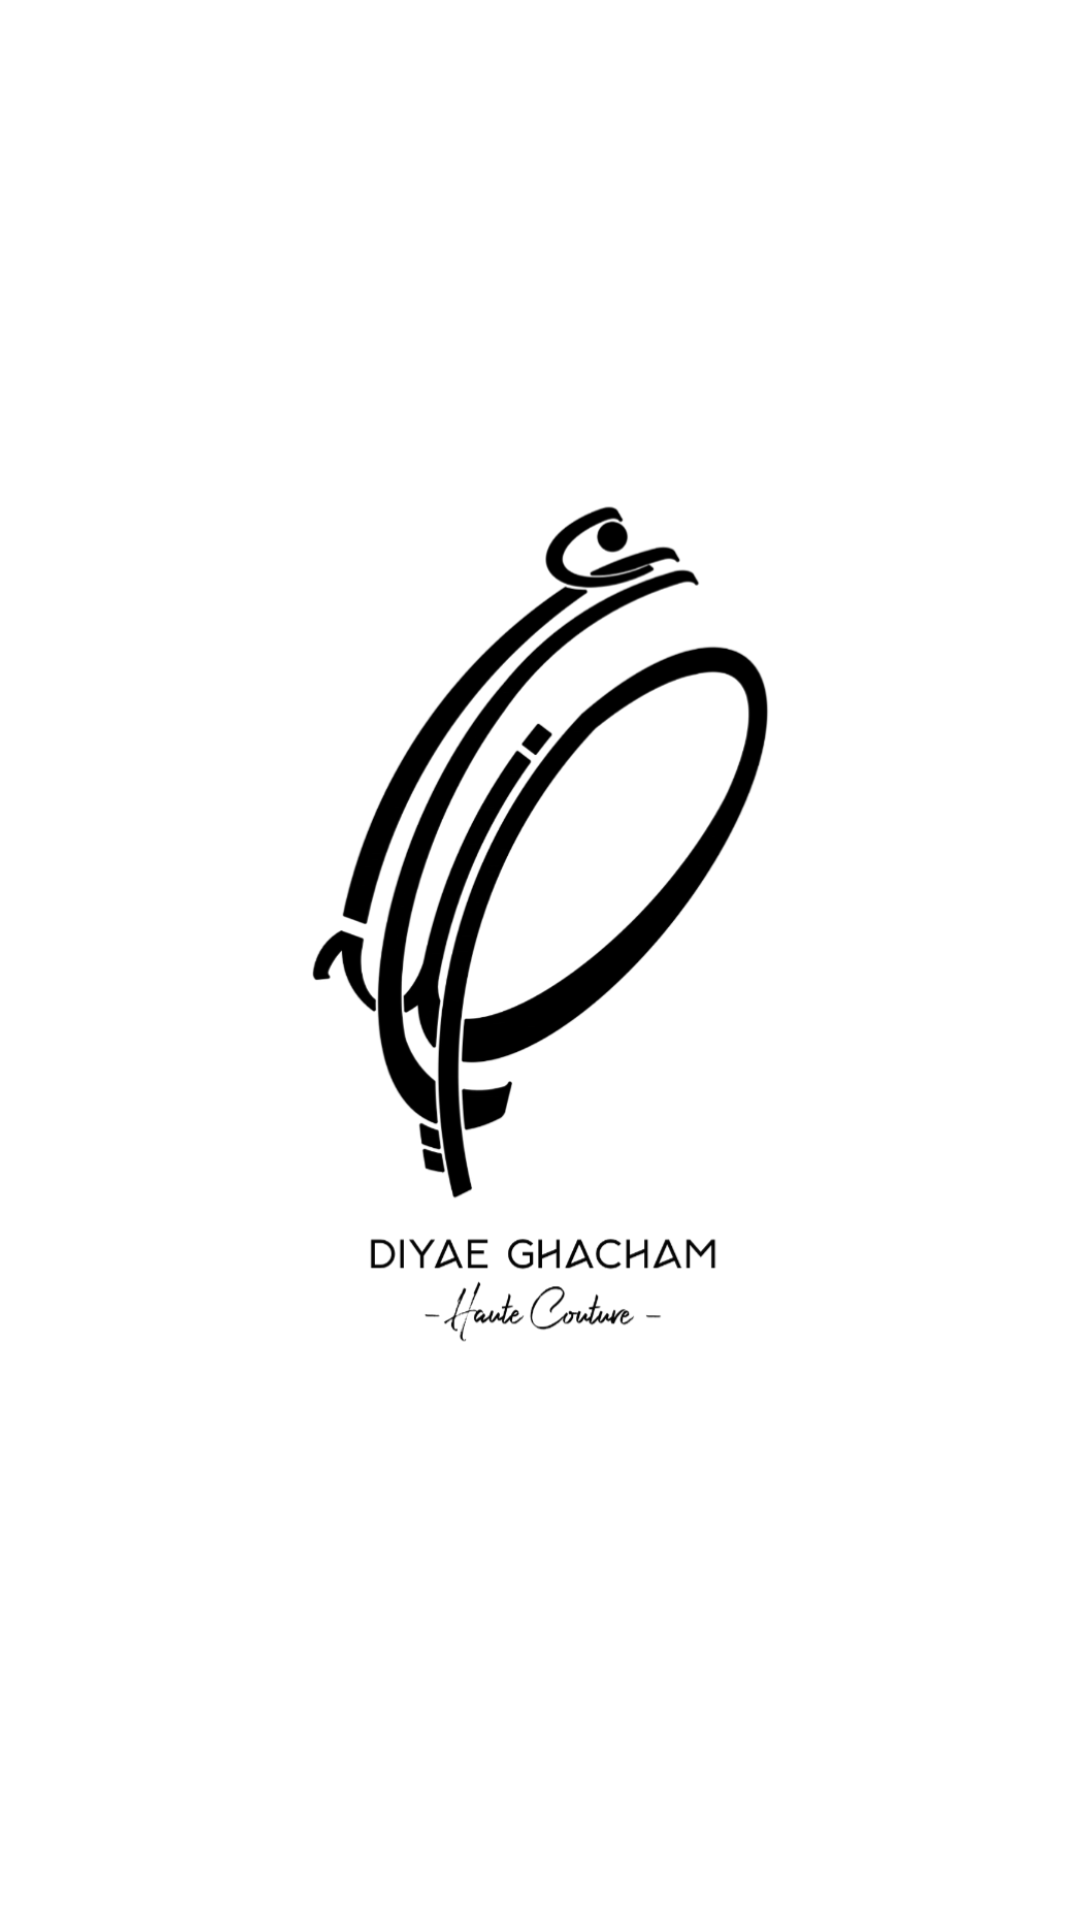 Diyae Ghacham Couture